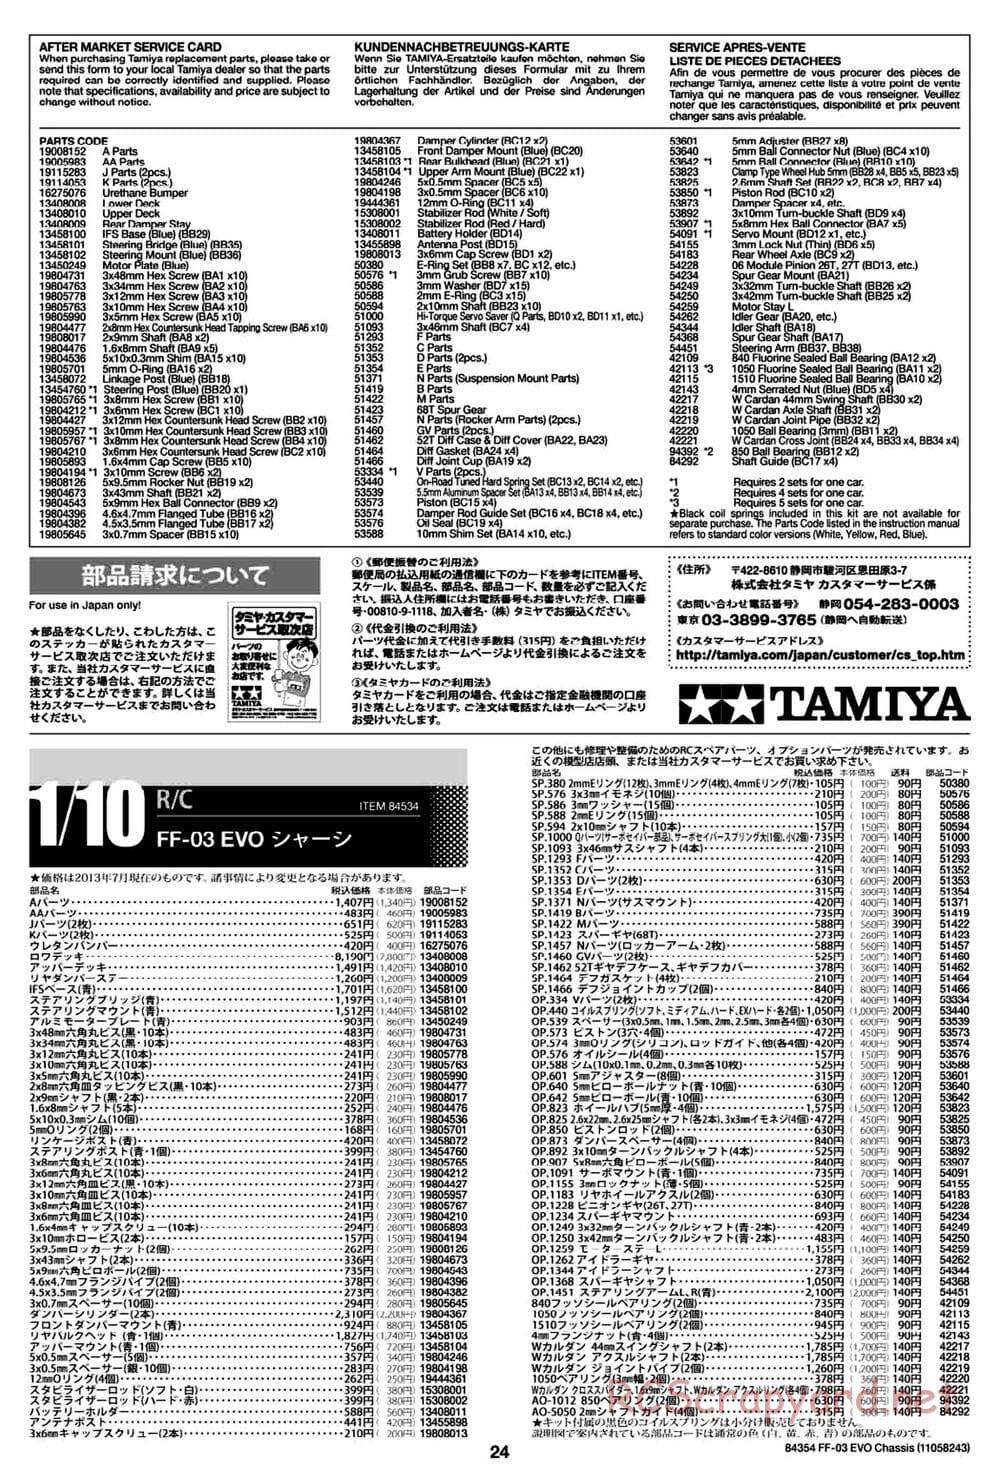 Tamiya - FF-03 Evo Chassis - Manual - Page 24